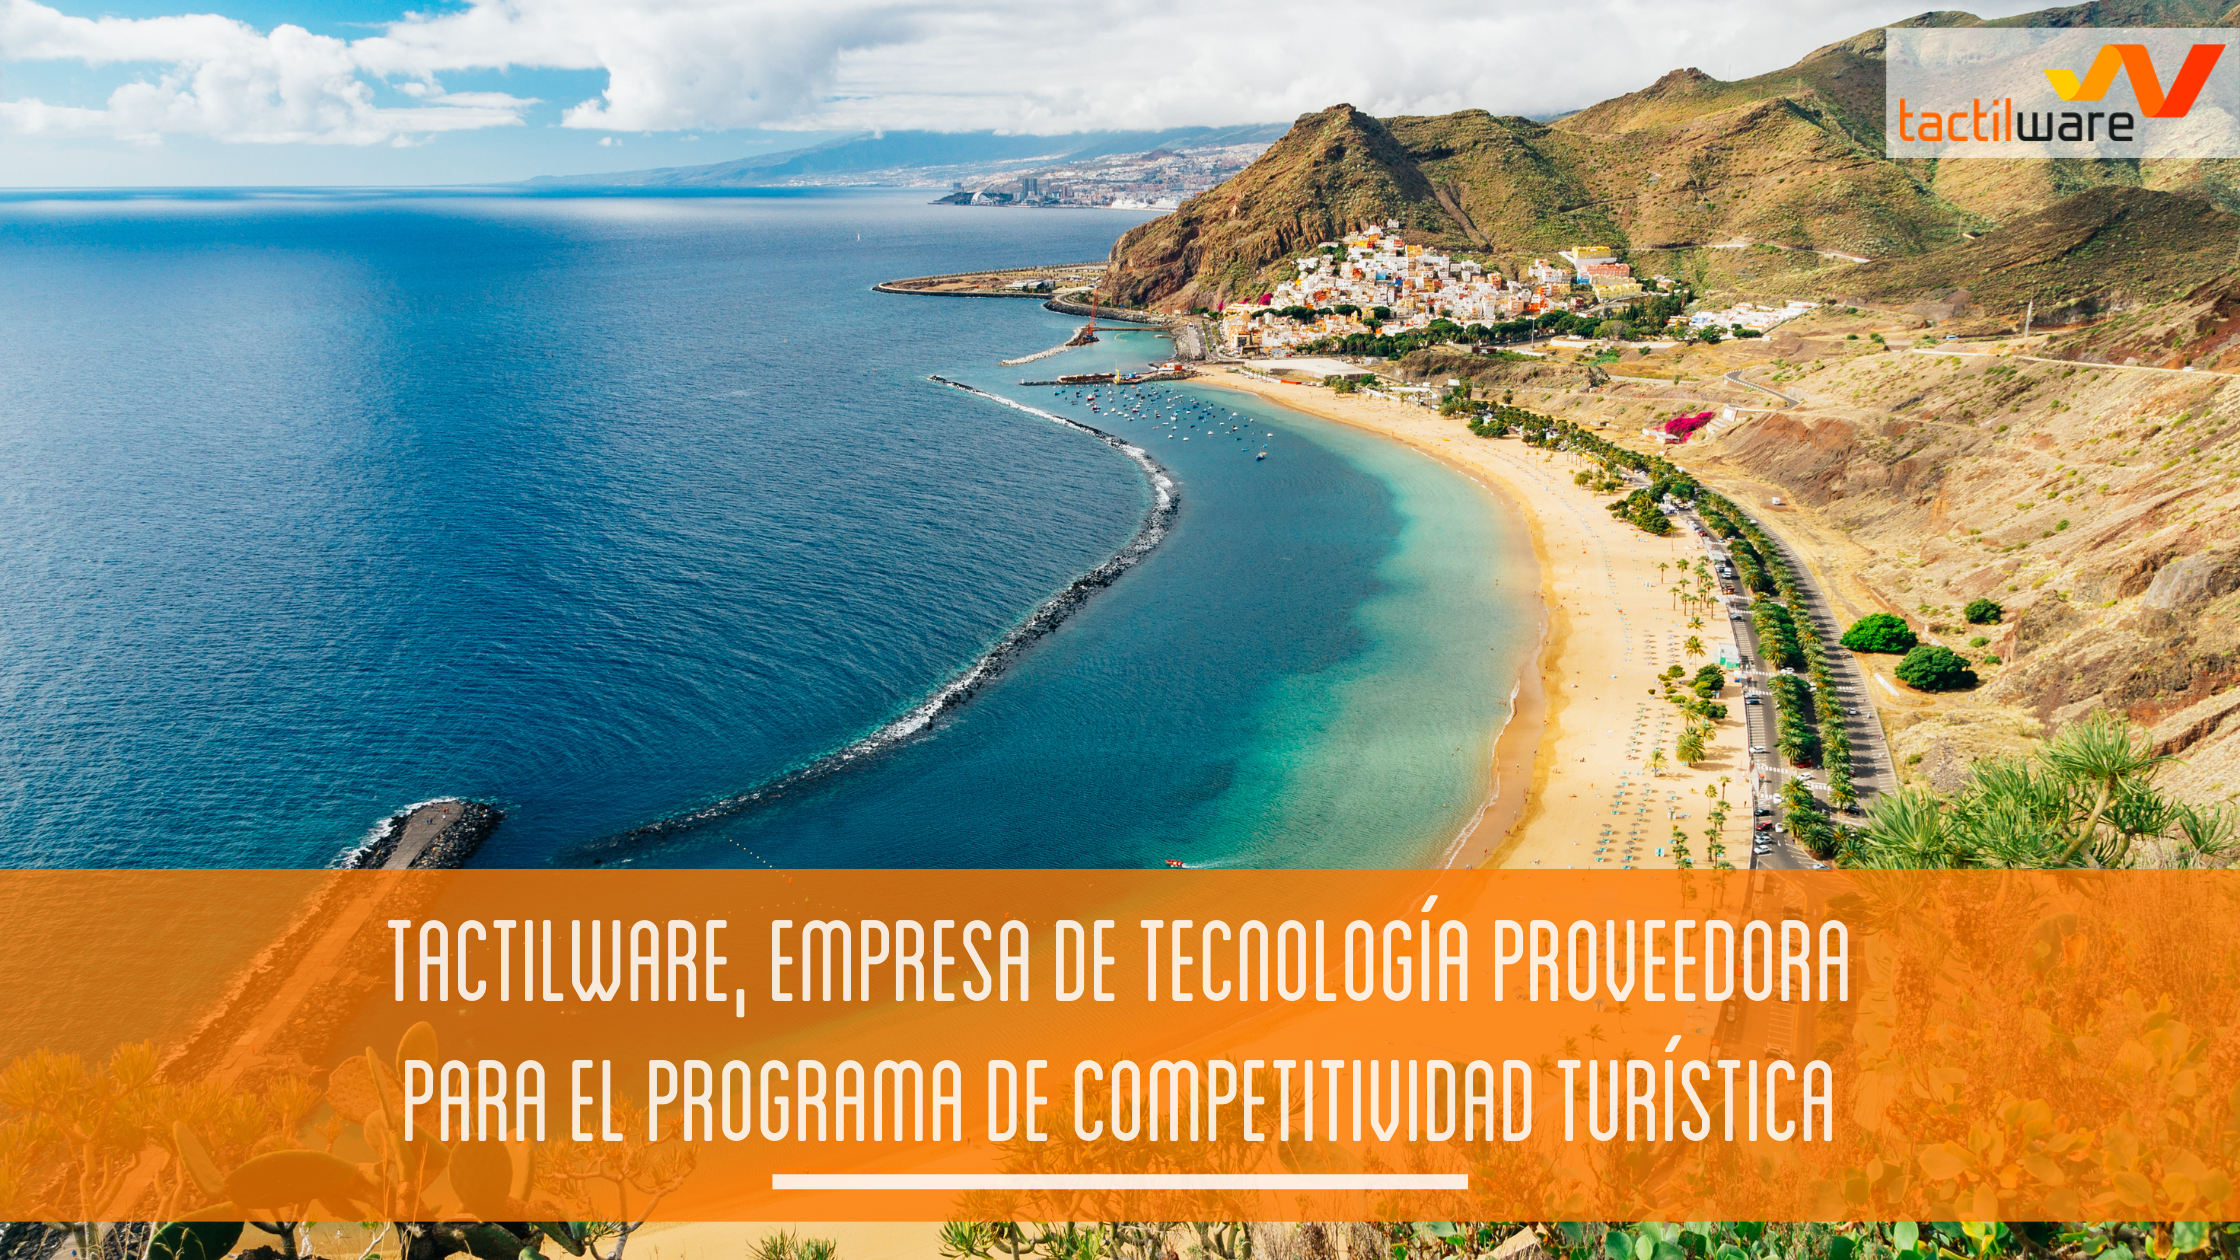 TACTILWARE, empresa de tecnología proveedora para el programa de competitividad turística (Convocatoria Cámara de Comercio Santa Cruz de Tenerife)